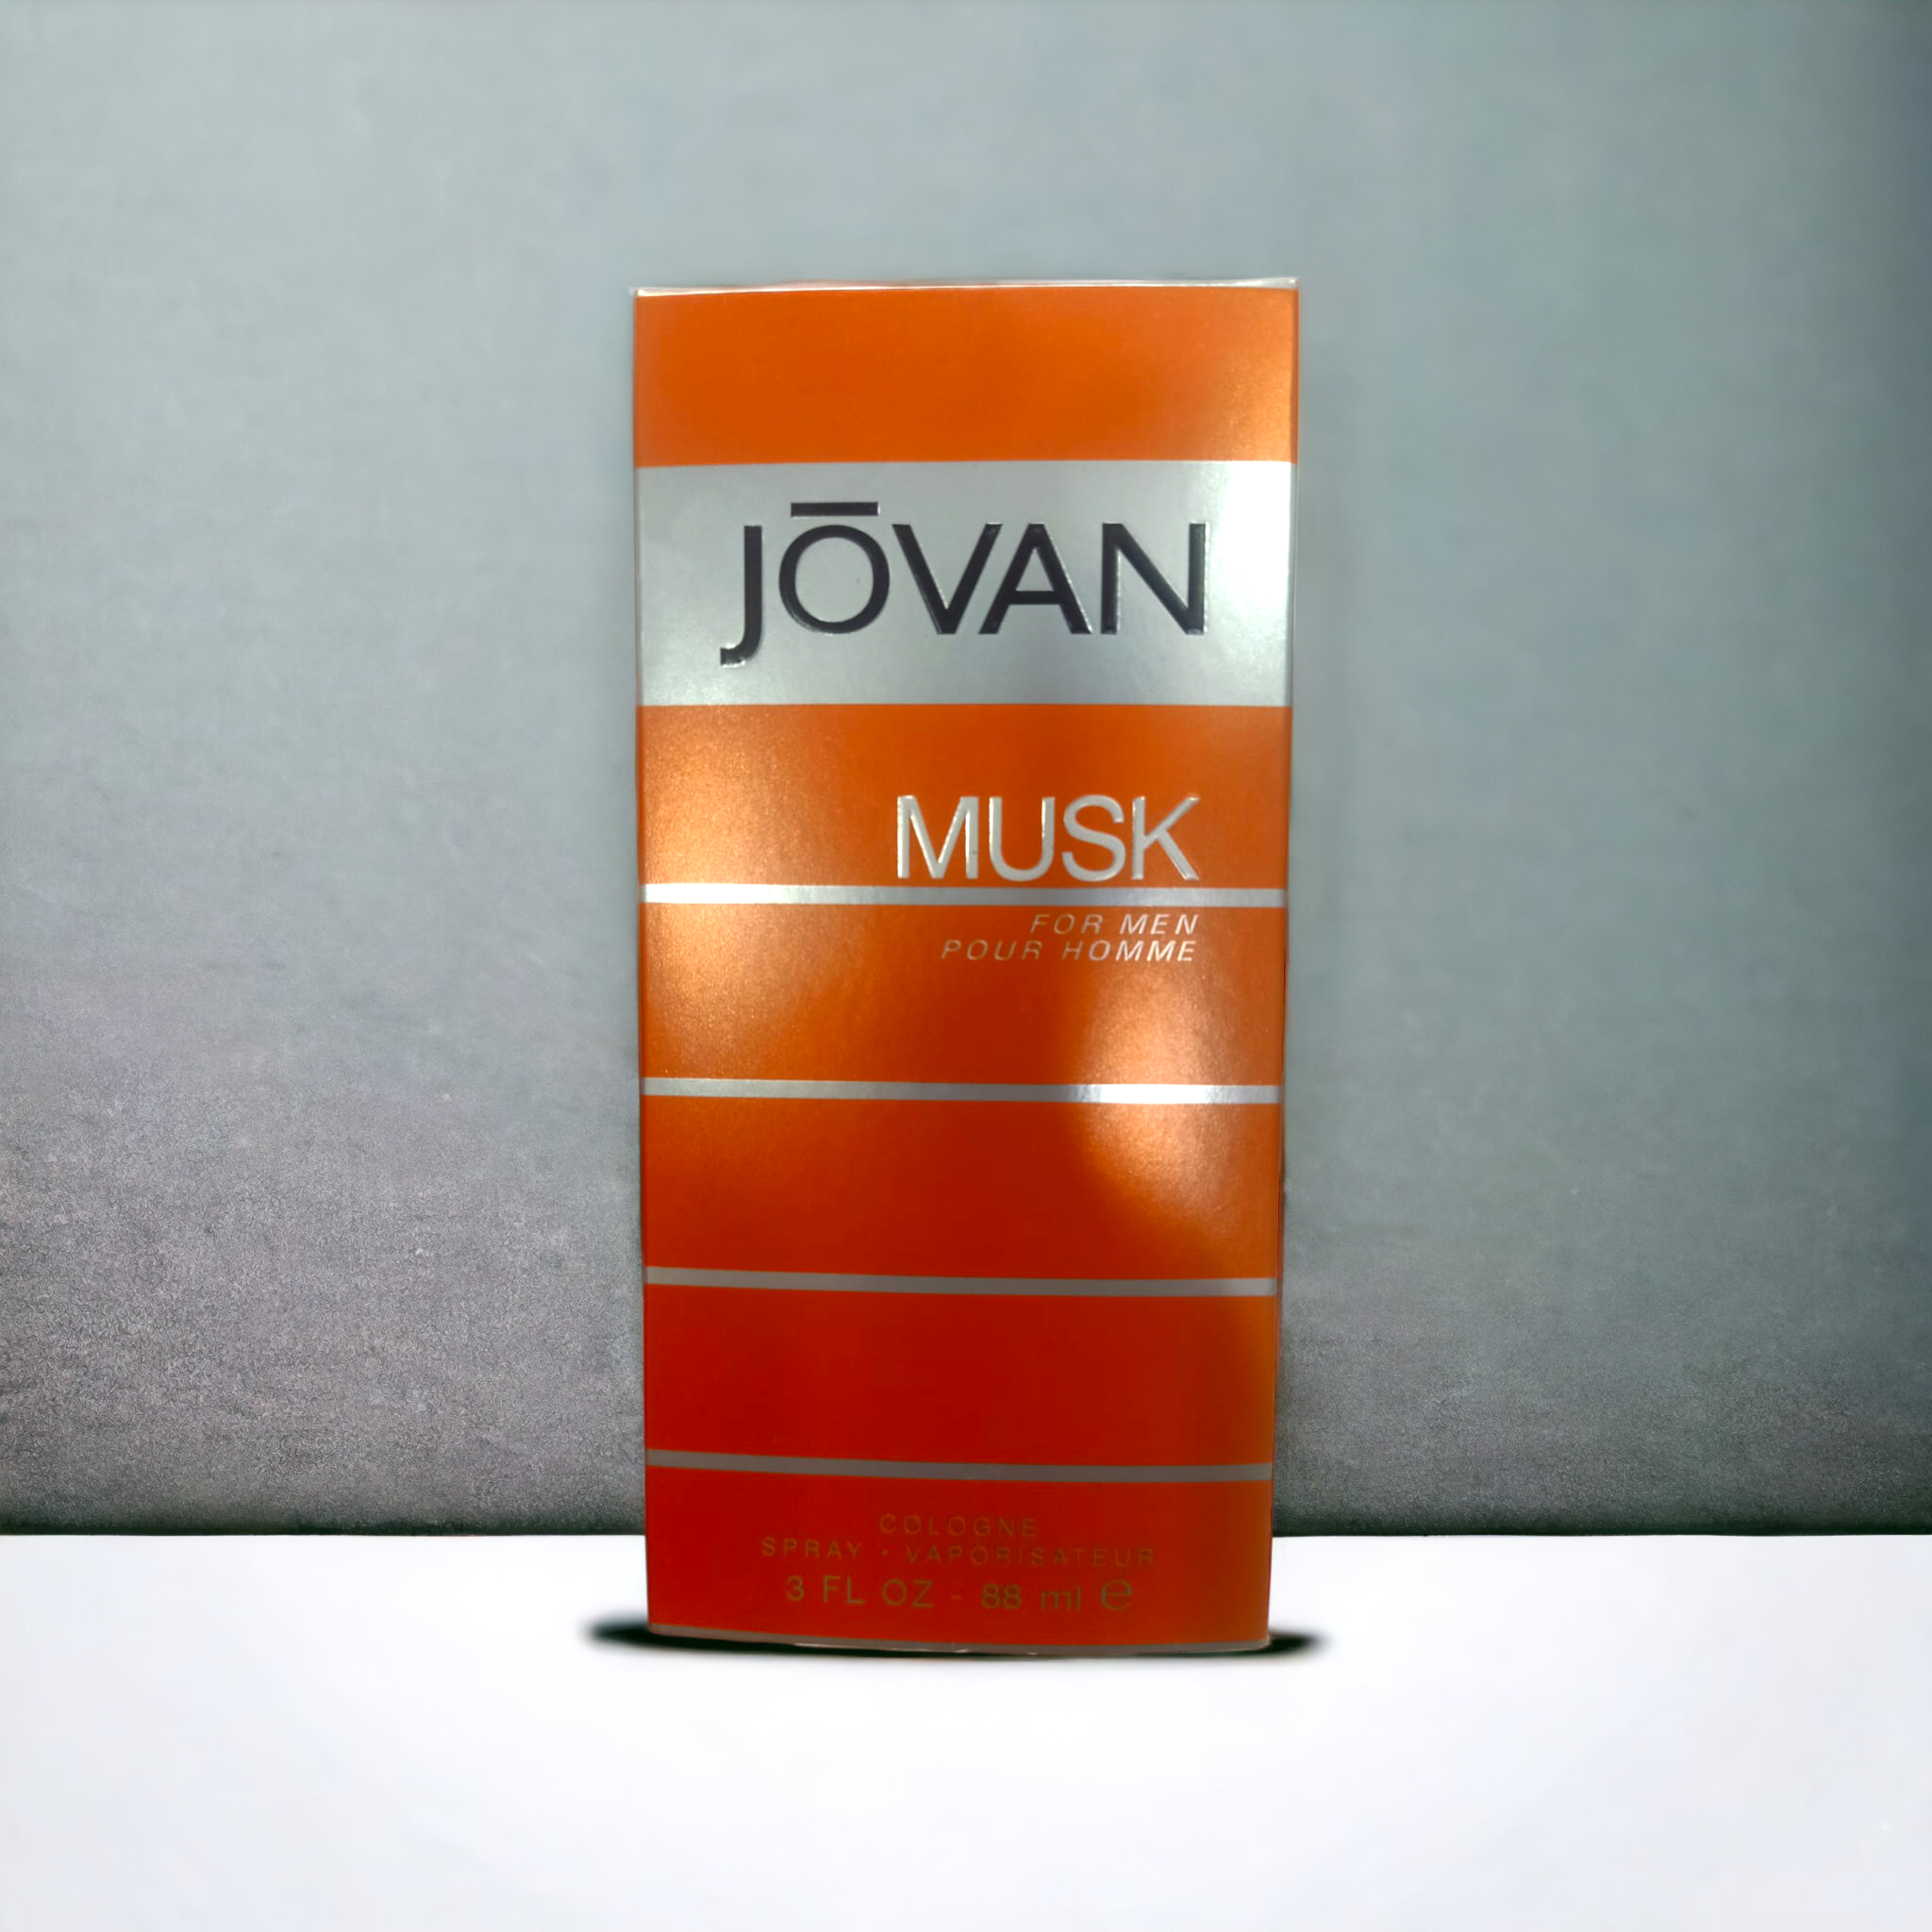 Jovan Musk Fragrance for Men